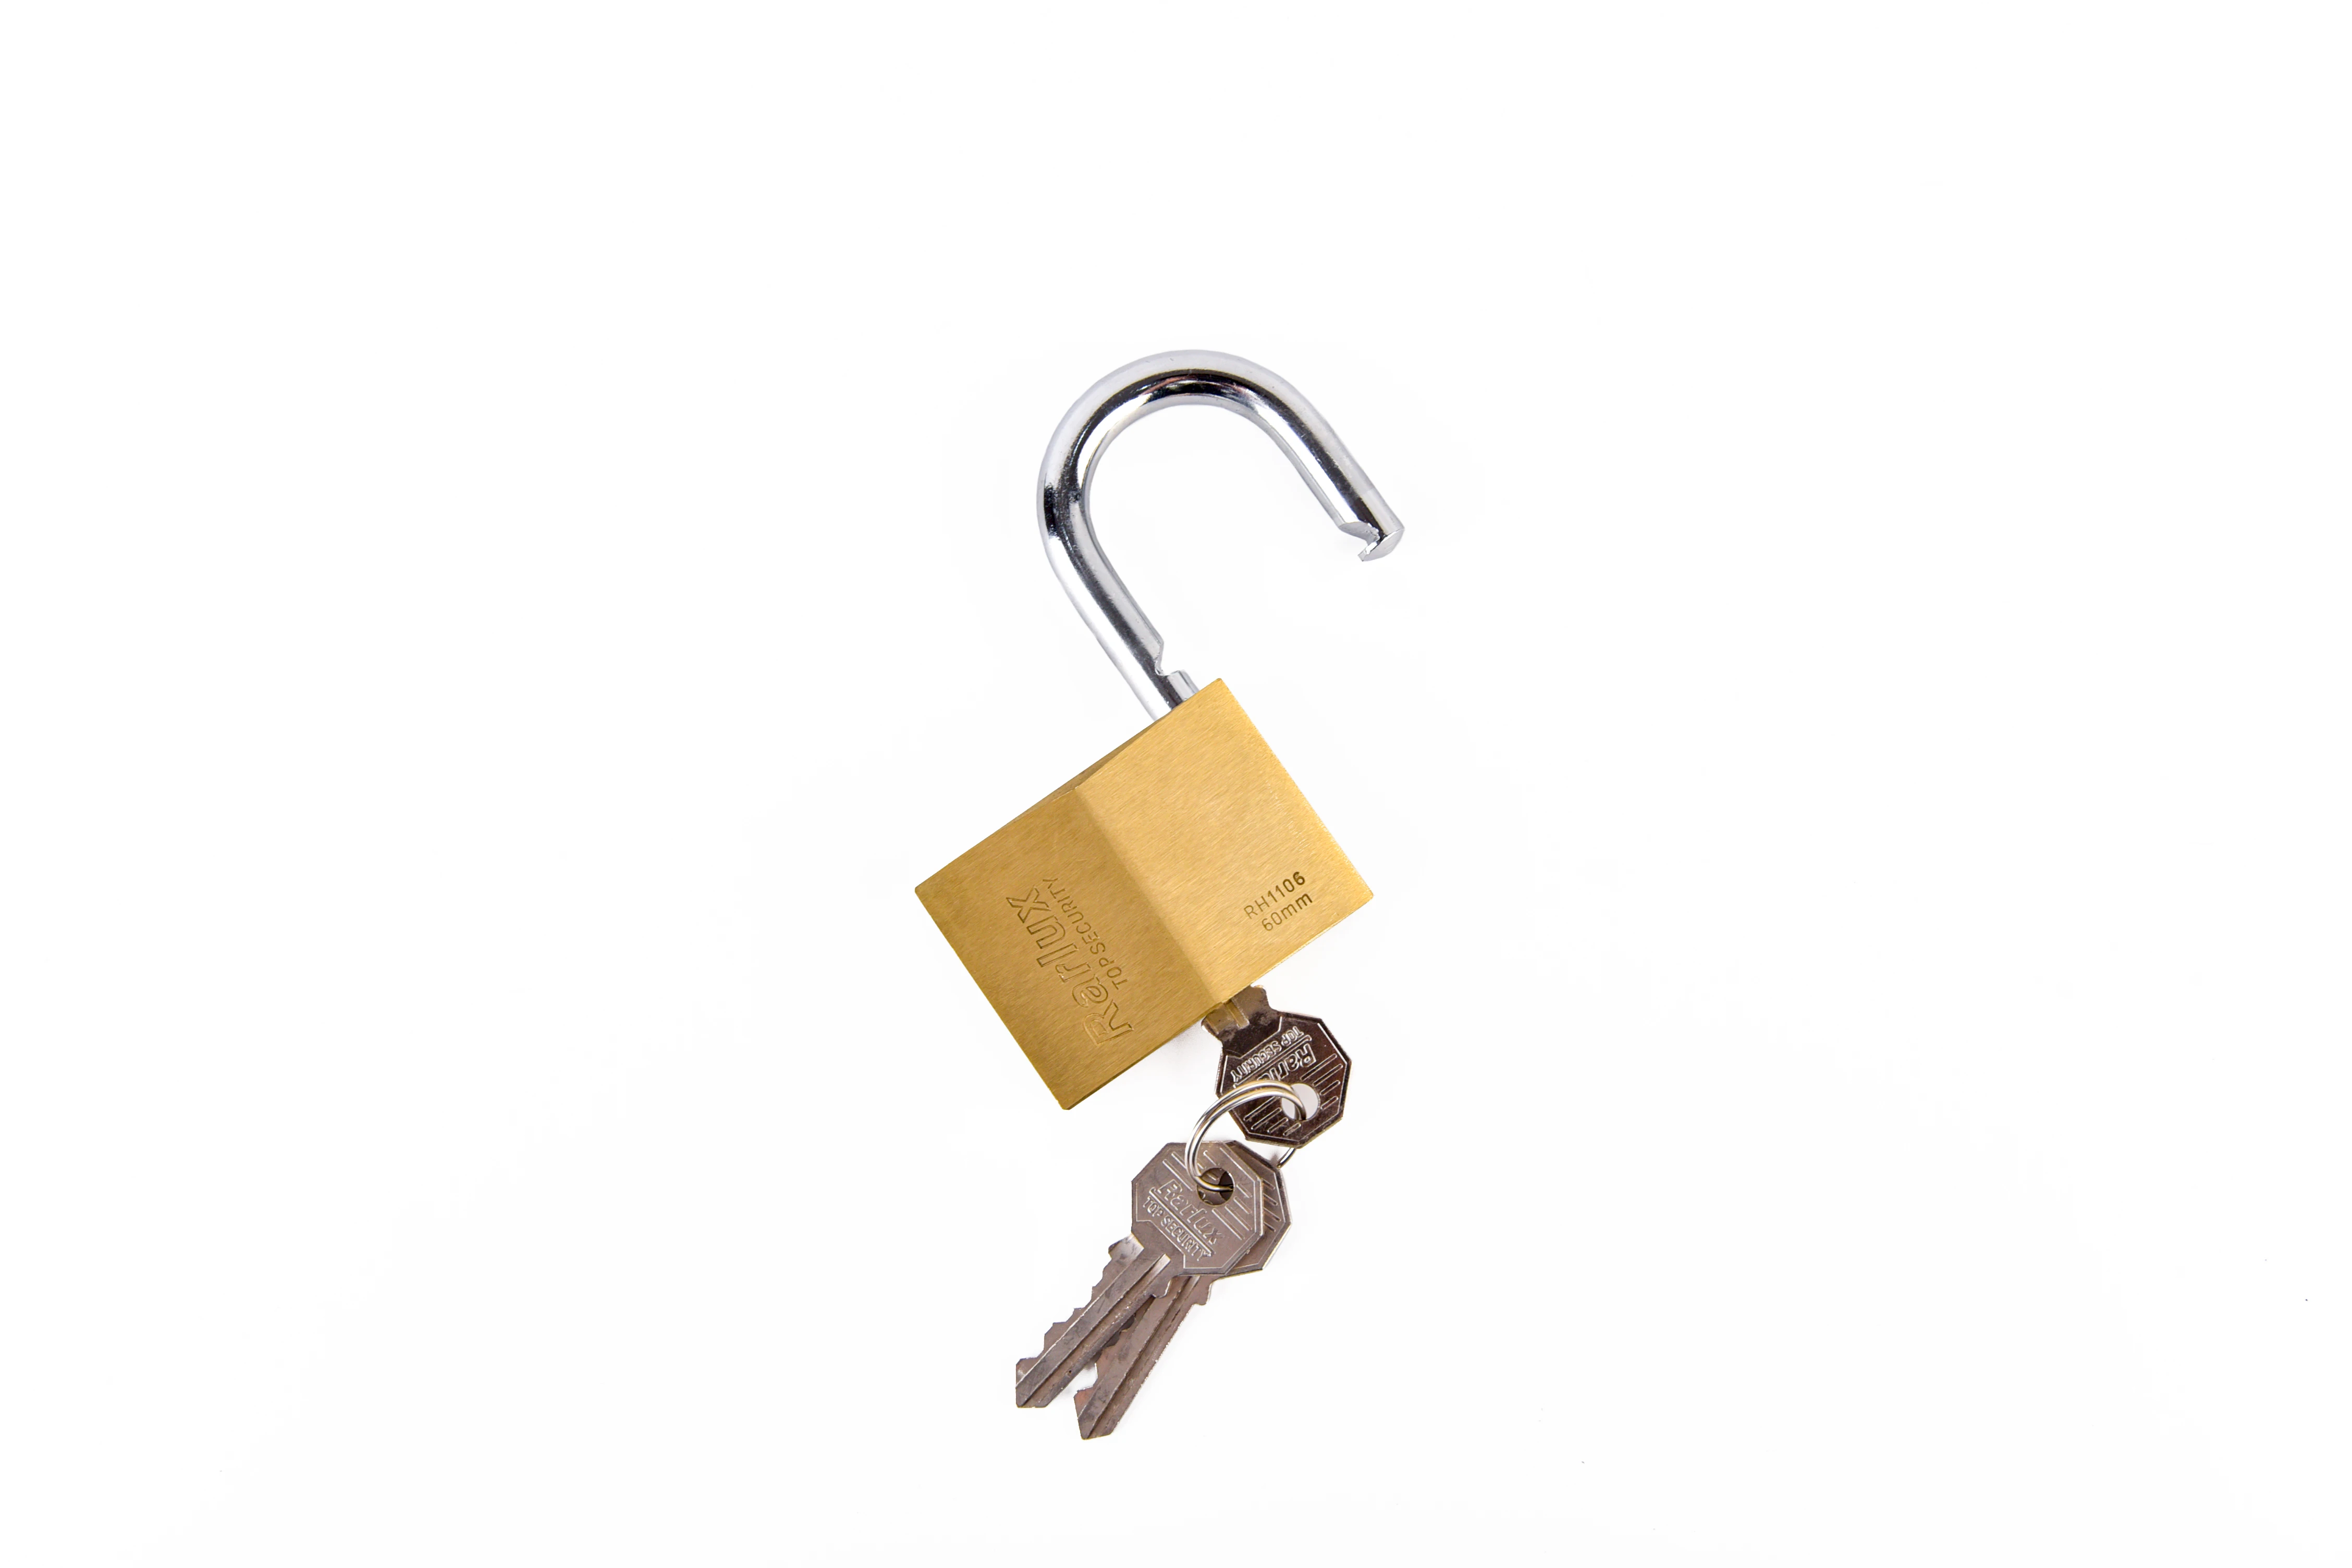 Rarlux top security Solid padlock 3 Nickel-plated keys Brass Padlock